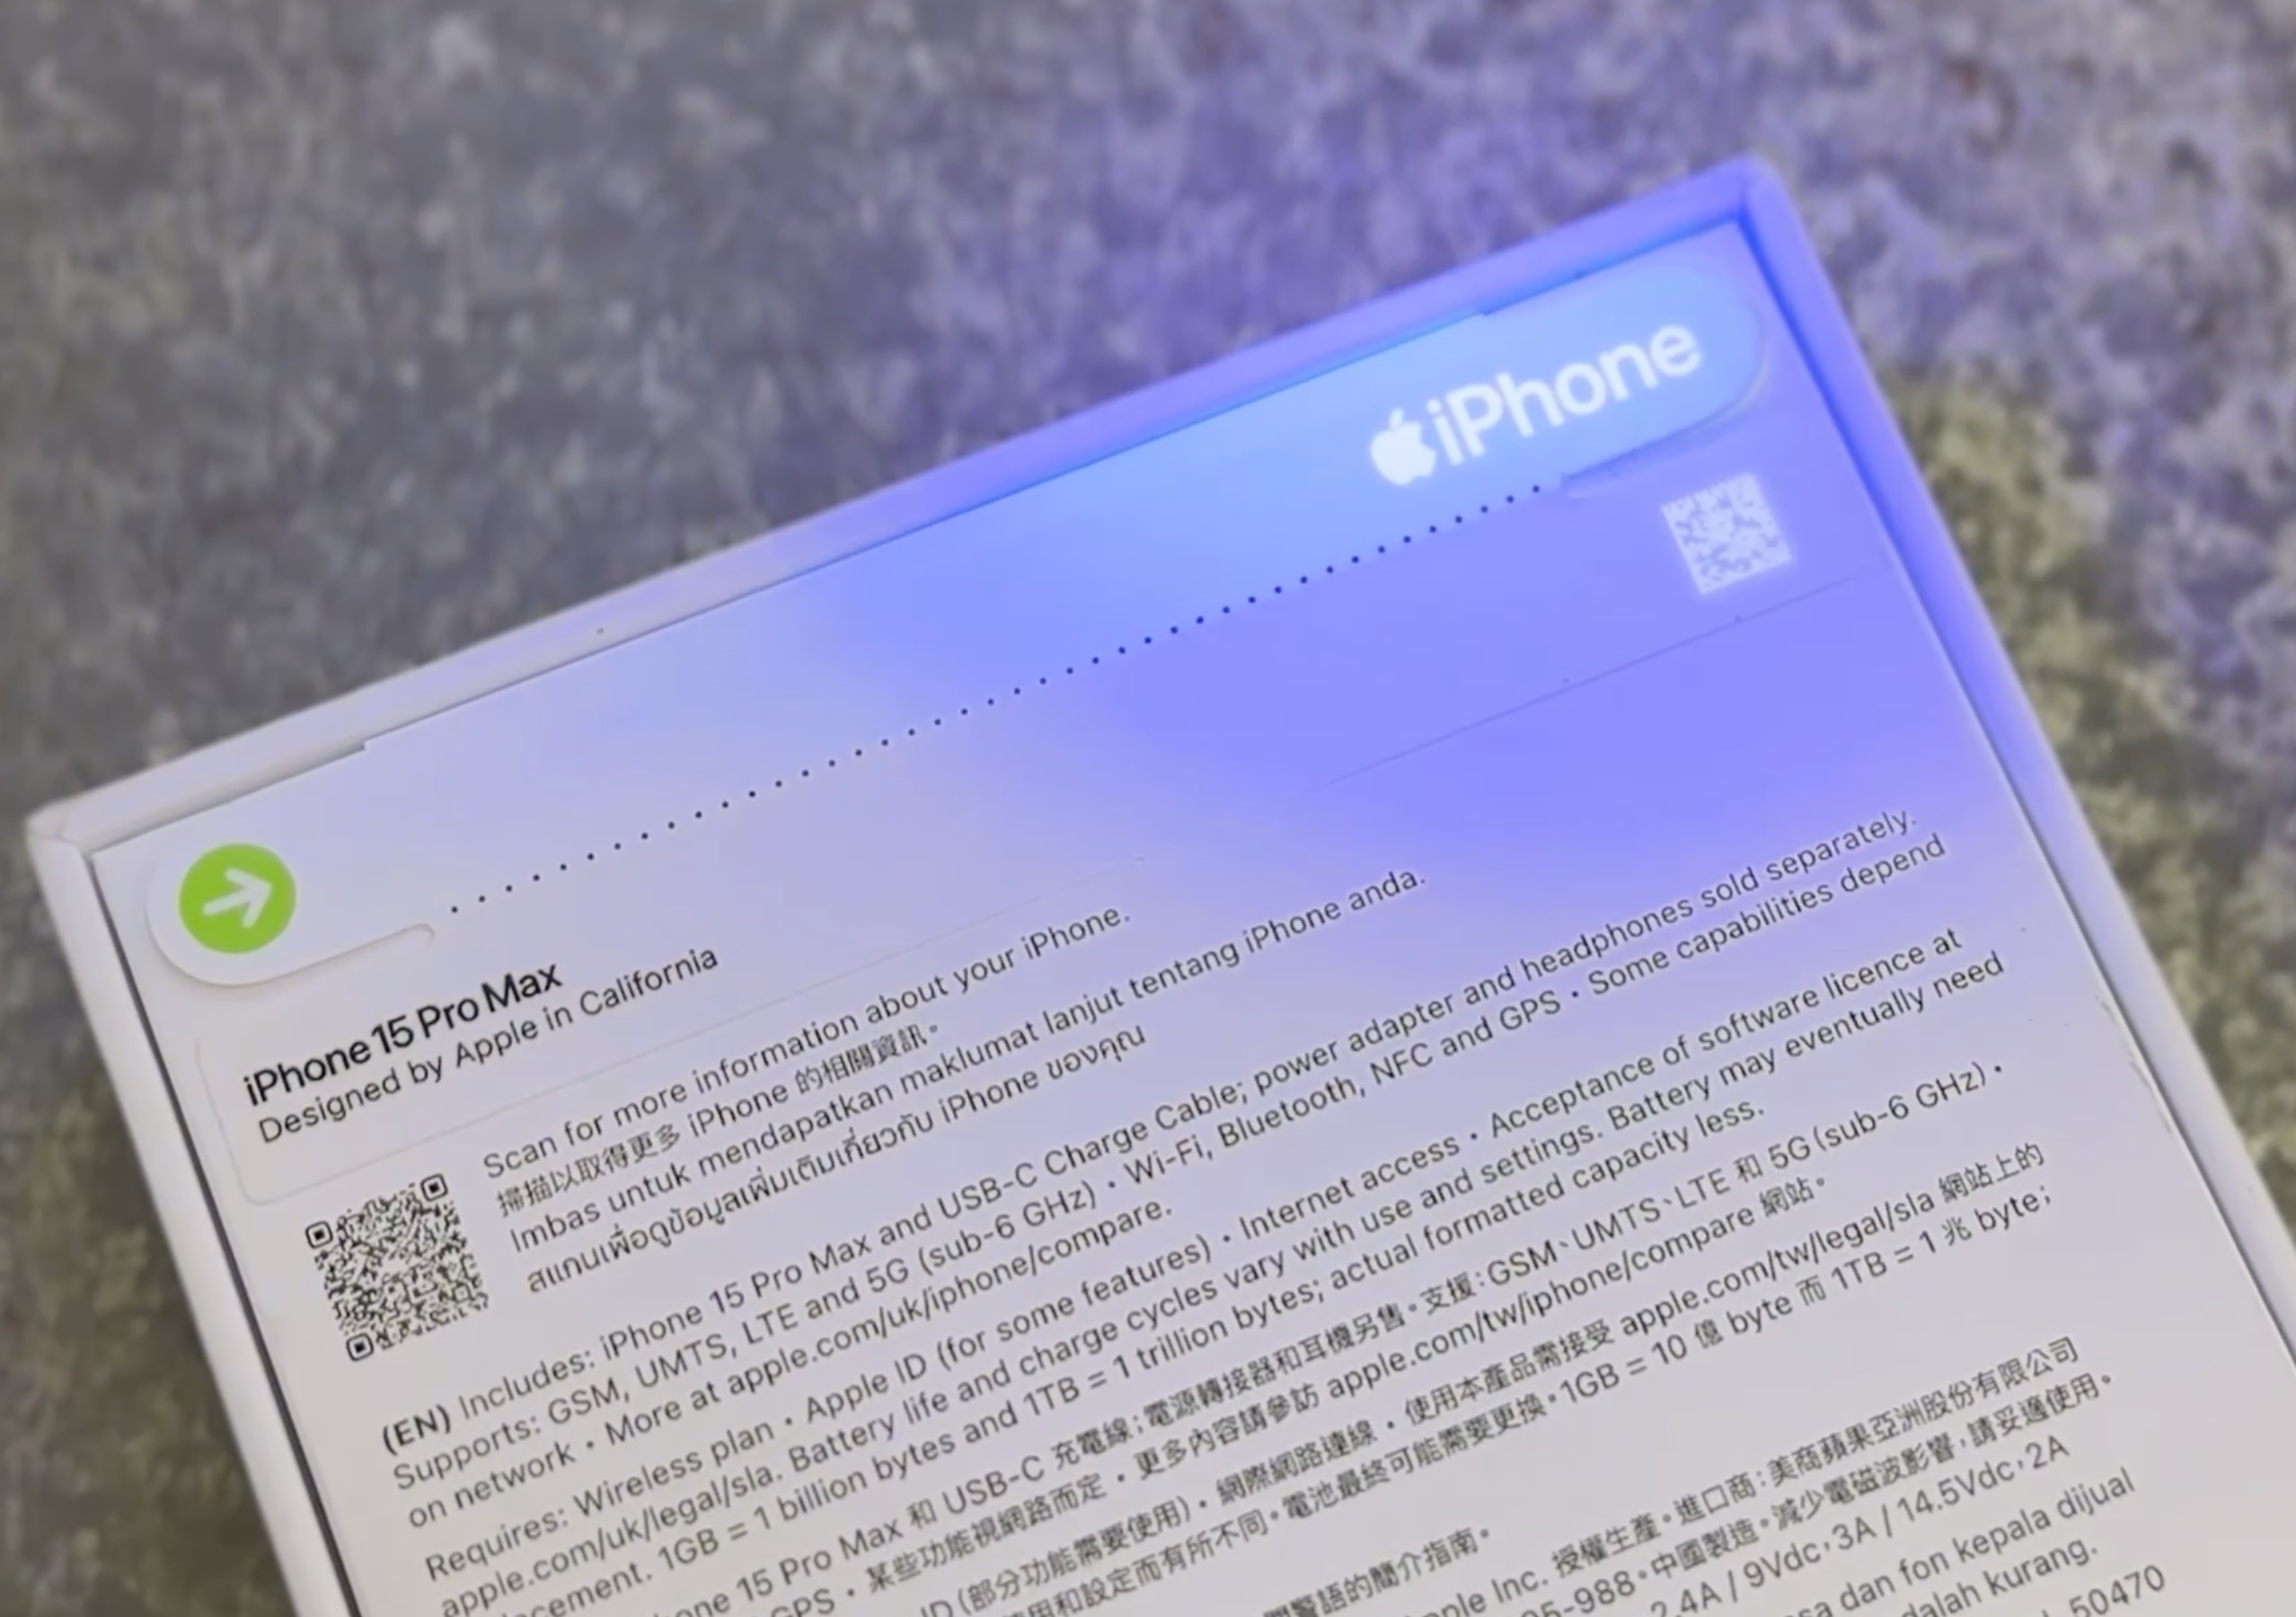 Na opakowaniu iPhone'a 15 znajdują się specjalne kody, które są widoczne tylko w świetle UV